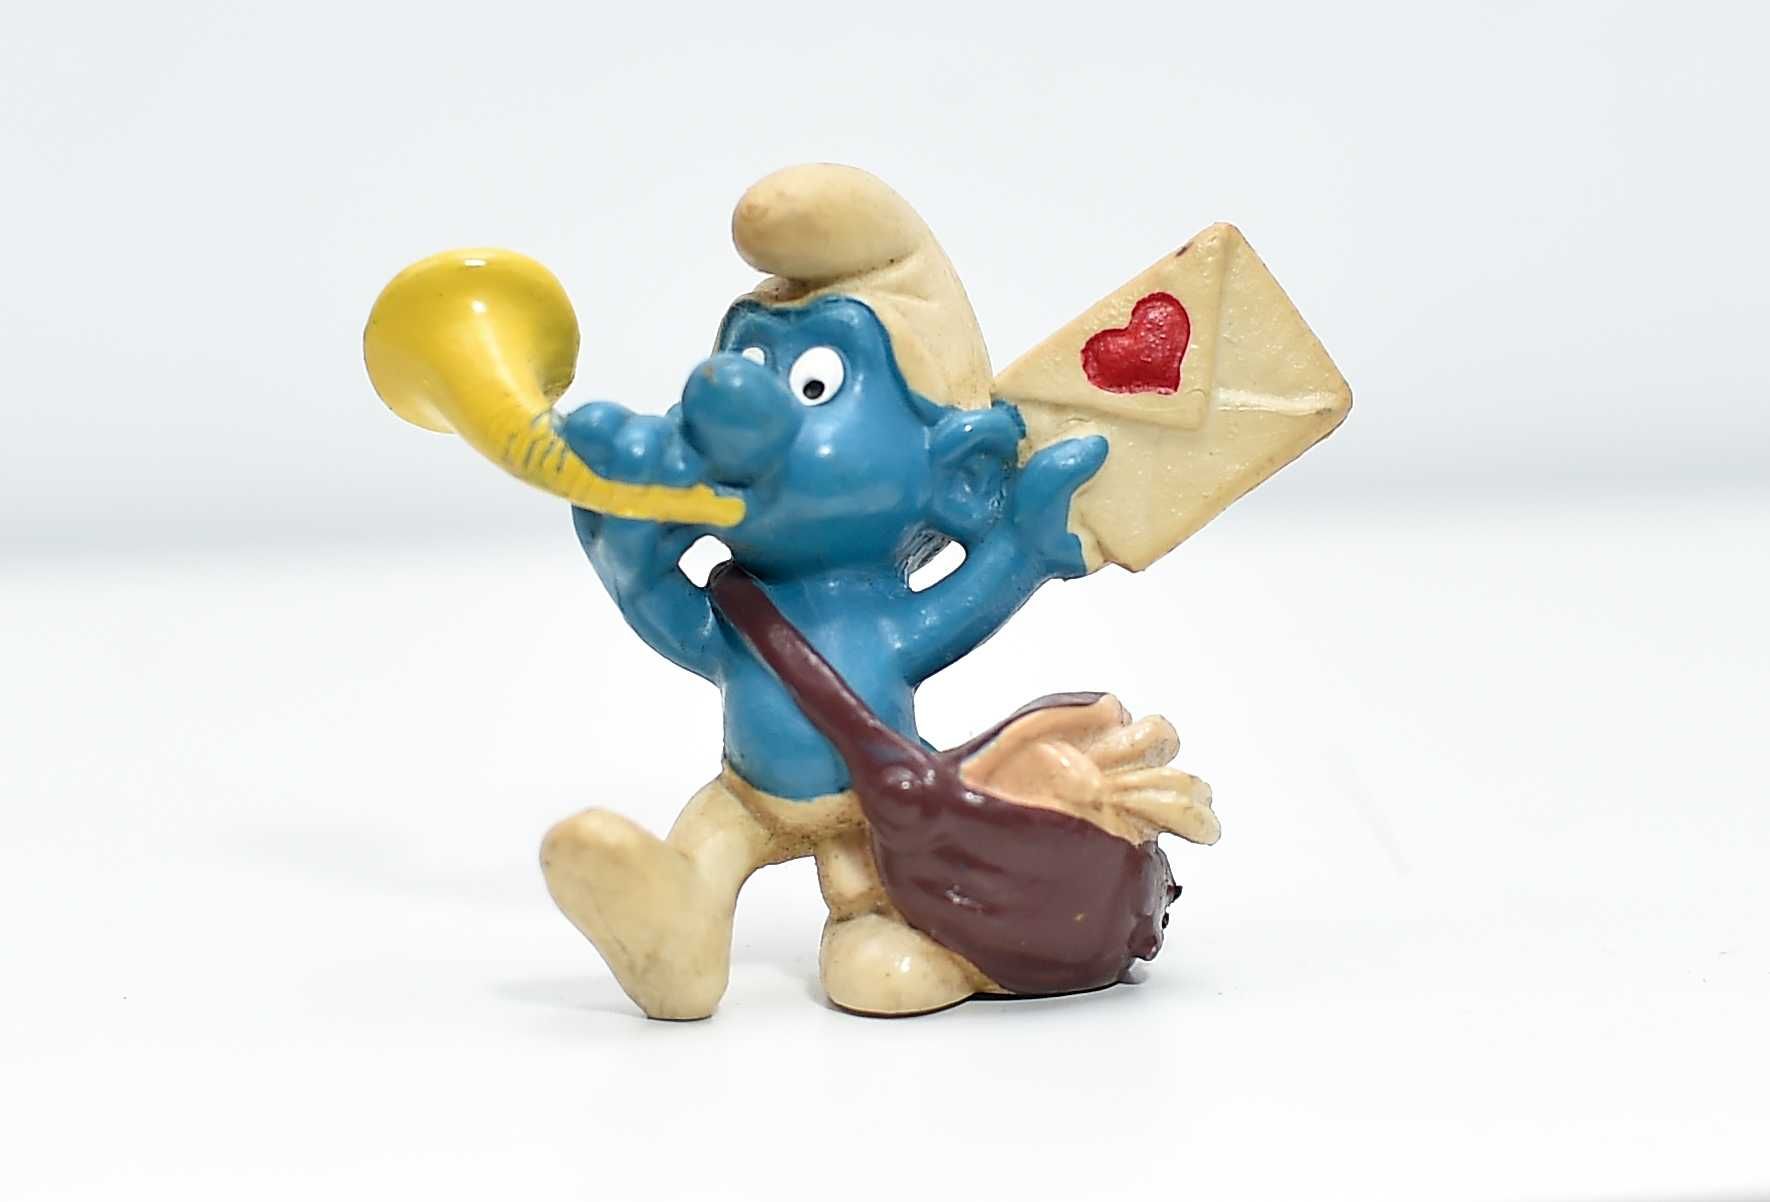 Schleich Schlelich - The Smurfs - 1978 - Postman Smurf